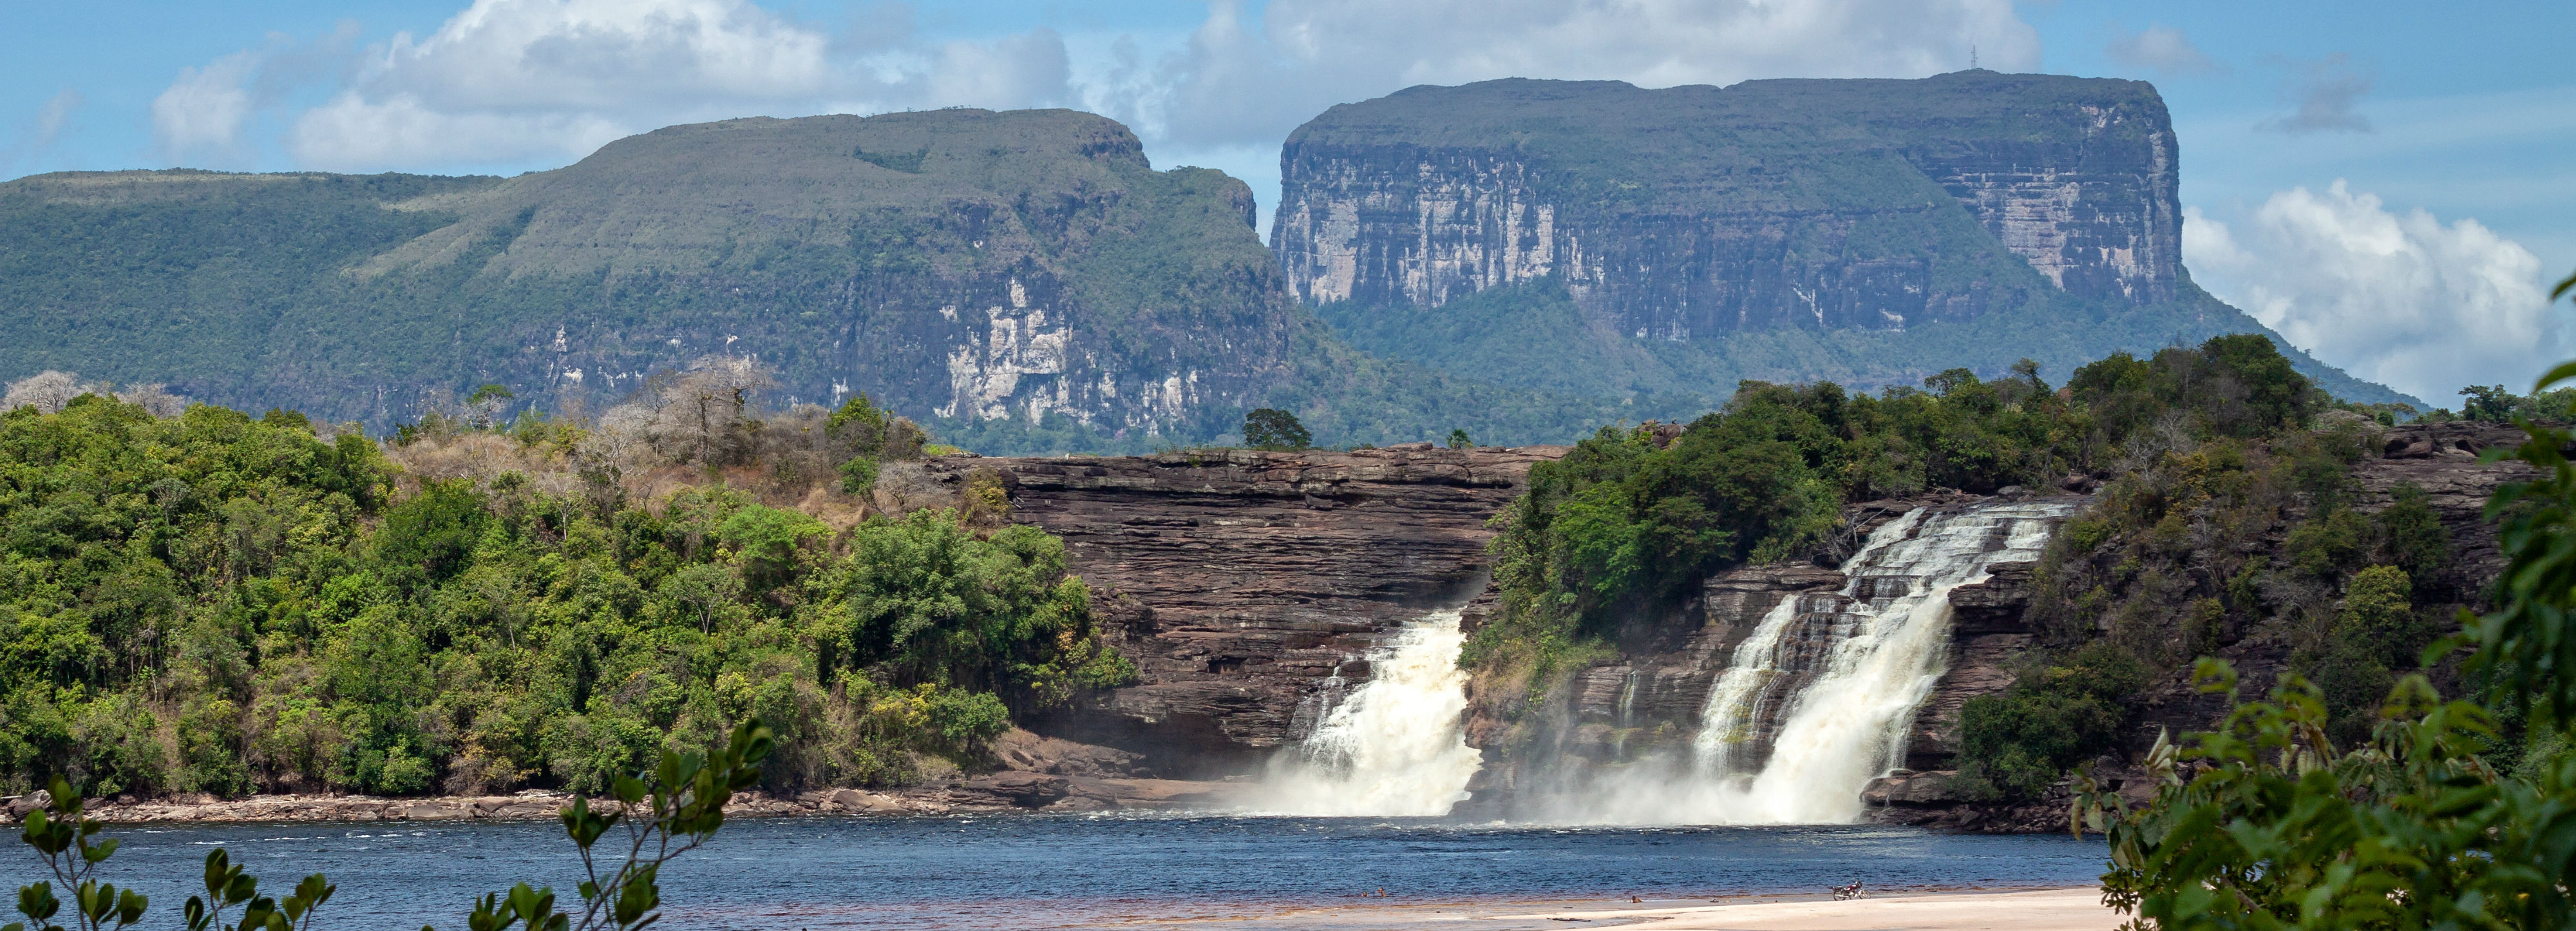 Природные особенности венесуэлы. Водопад Канайма Венесуэла. Нац парк Канайма Венесуэла. Mochima National Park Венесуэла. Водопад Анхель (национальный парк Канайма Венесуэла).